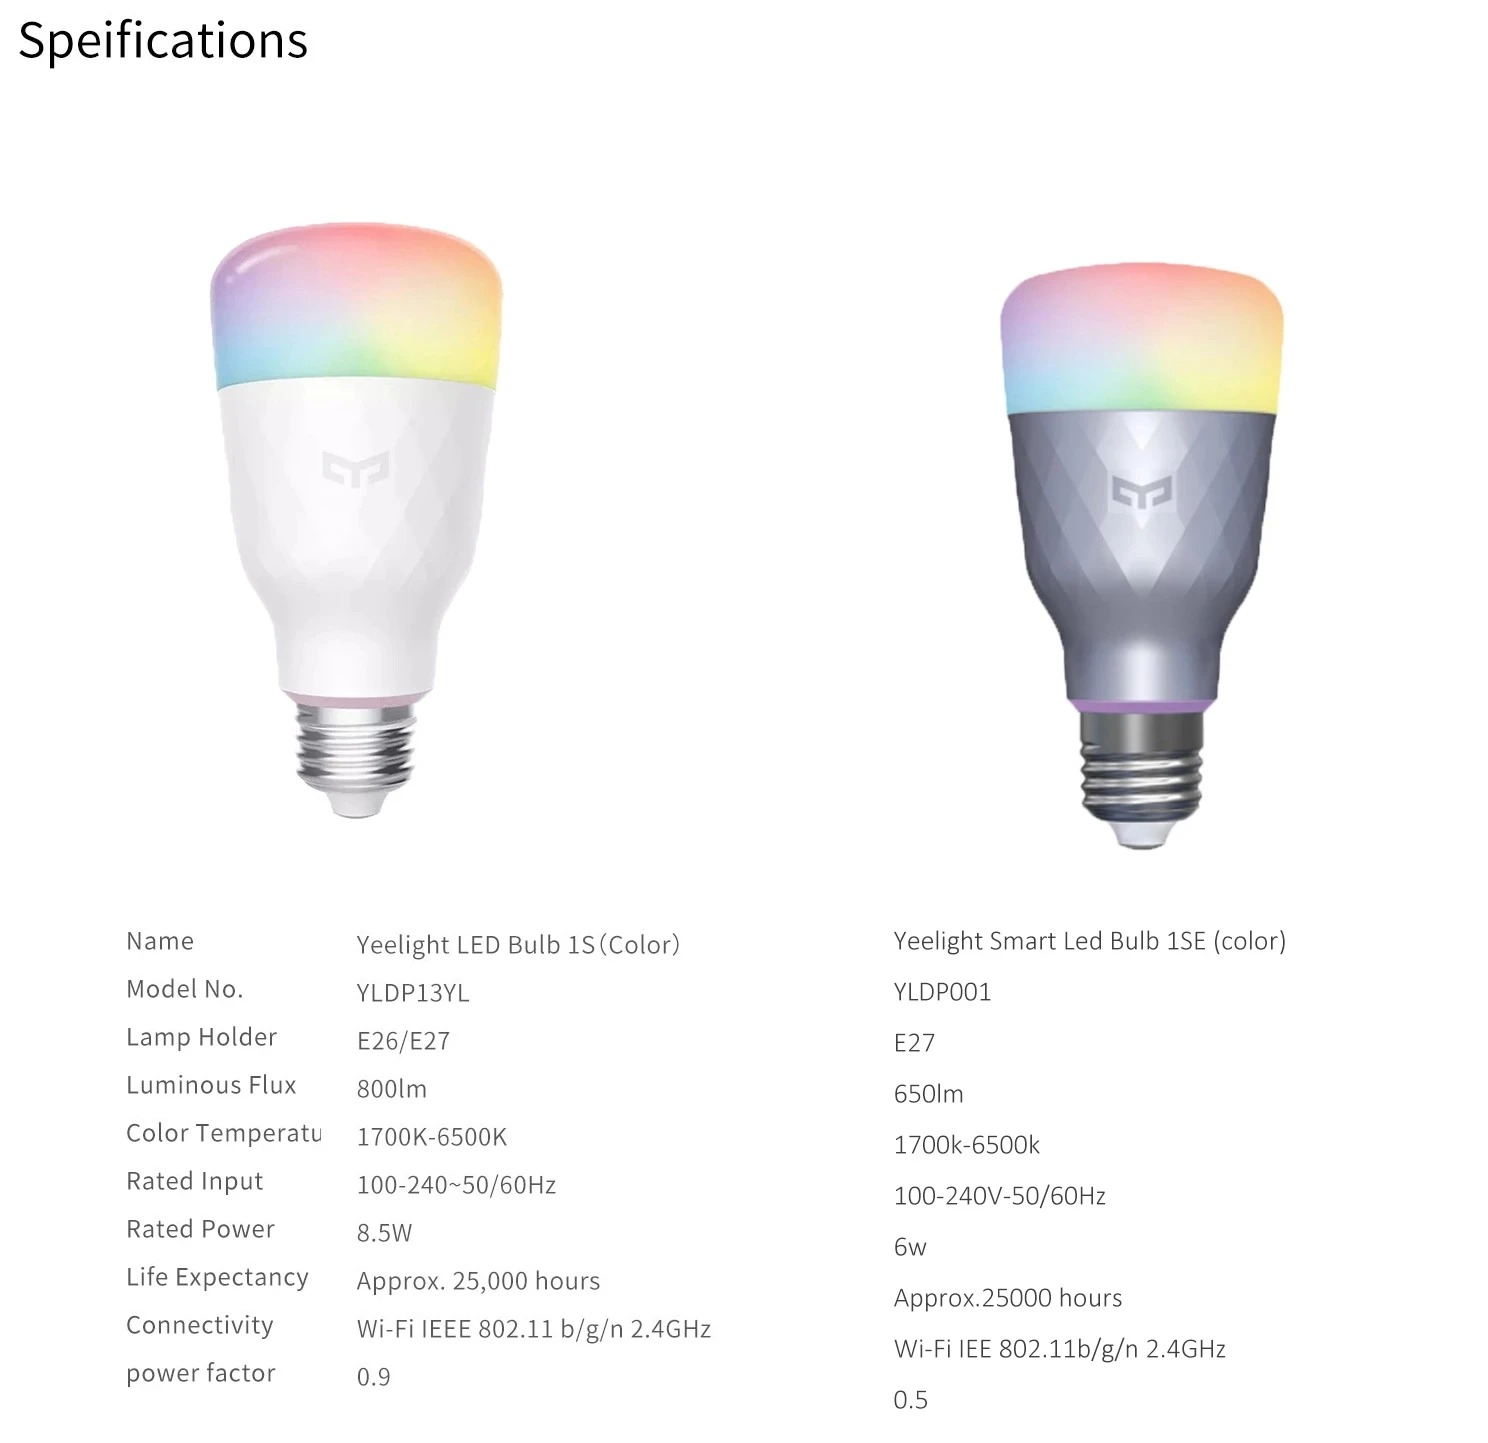 Yeelight-Ampoule LED Intelligente 1S Colorée, 800 Lumens, 8.5W, Inda Lemon, Lampe Intelligente pour Application ATA Home, Fonctionne avec Apple Homekit